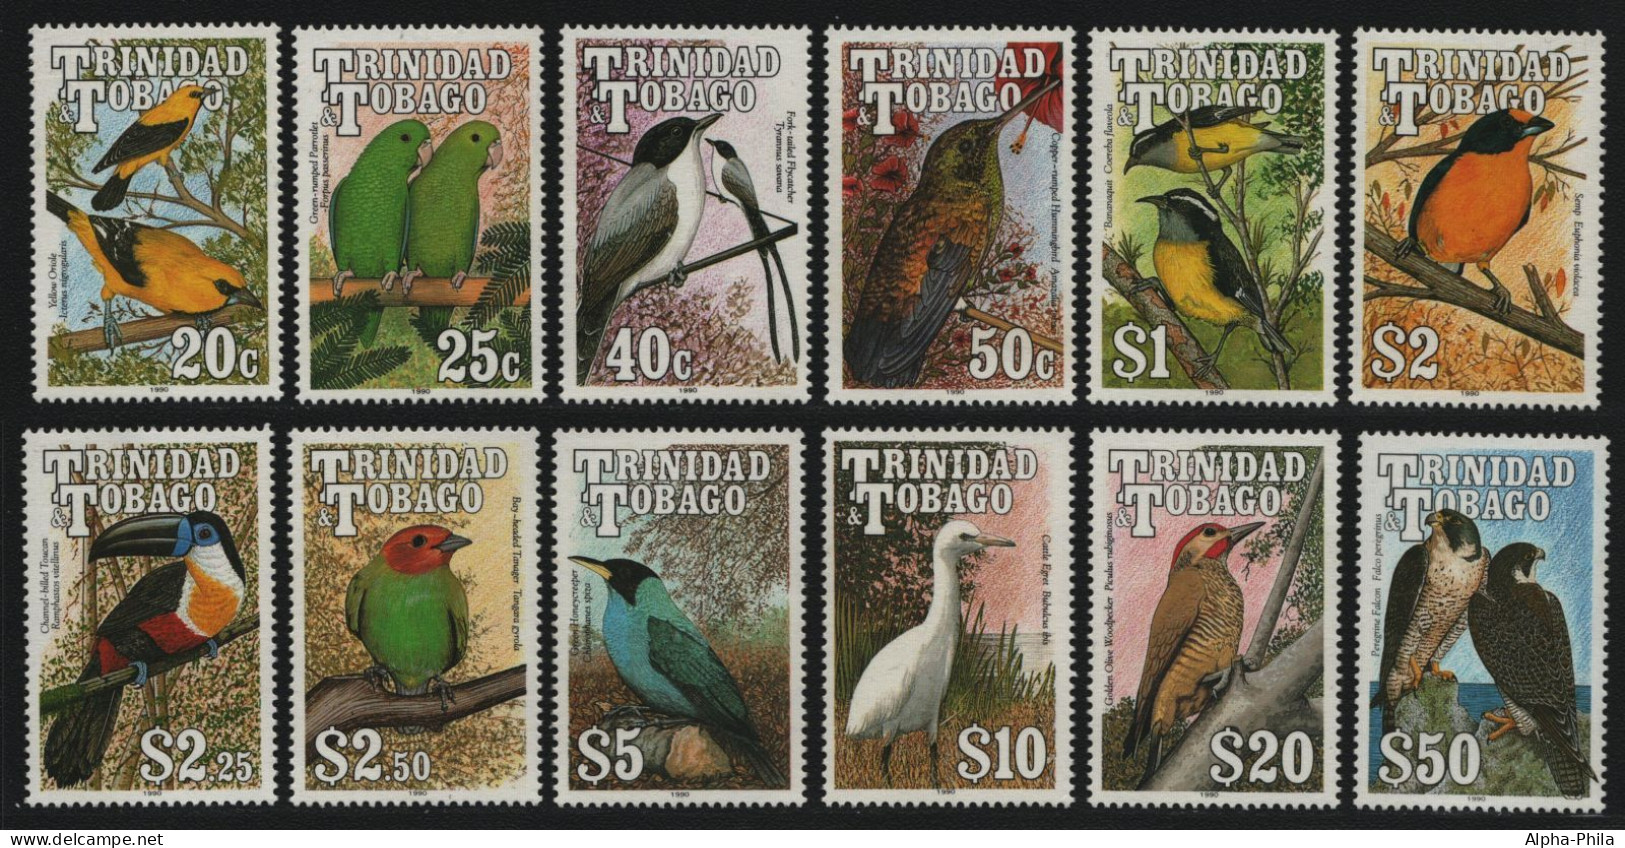 Trinidad & Tobago 1990 - Mi-Nr. 609-620 ** - MNH - Vögel / Birds (I) - Trinidad & Tobago (1962-...)